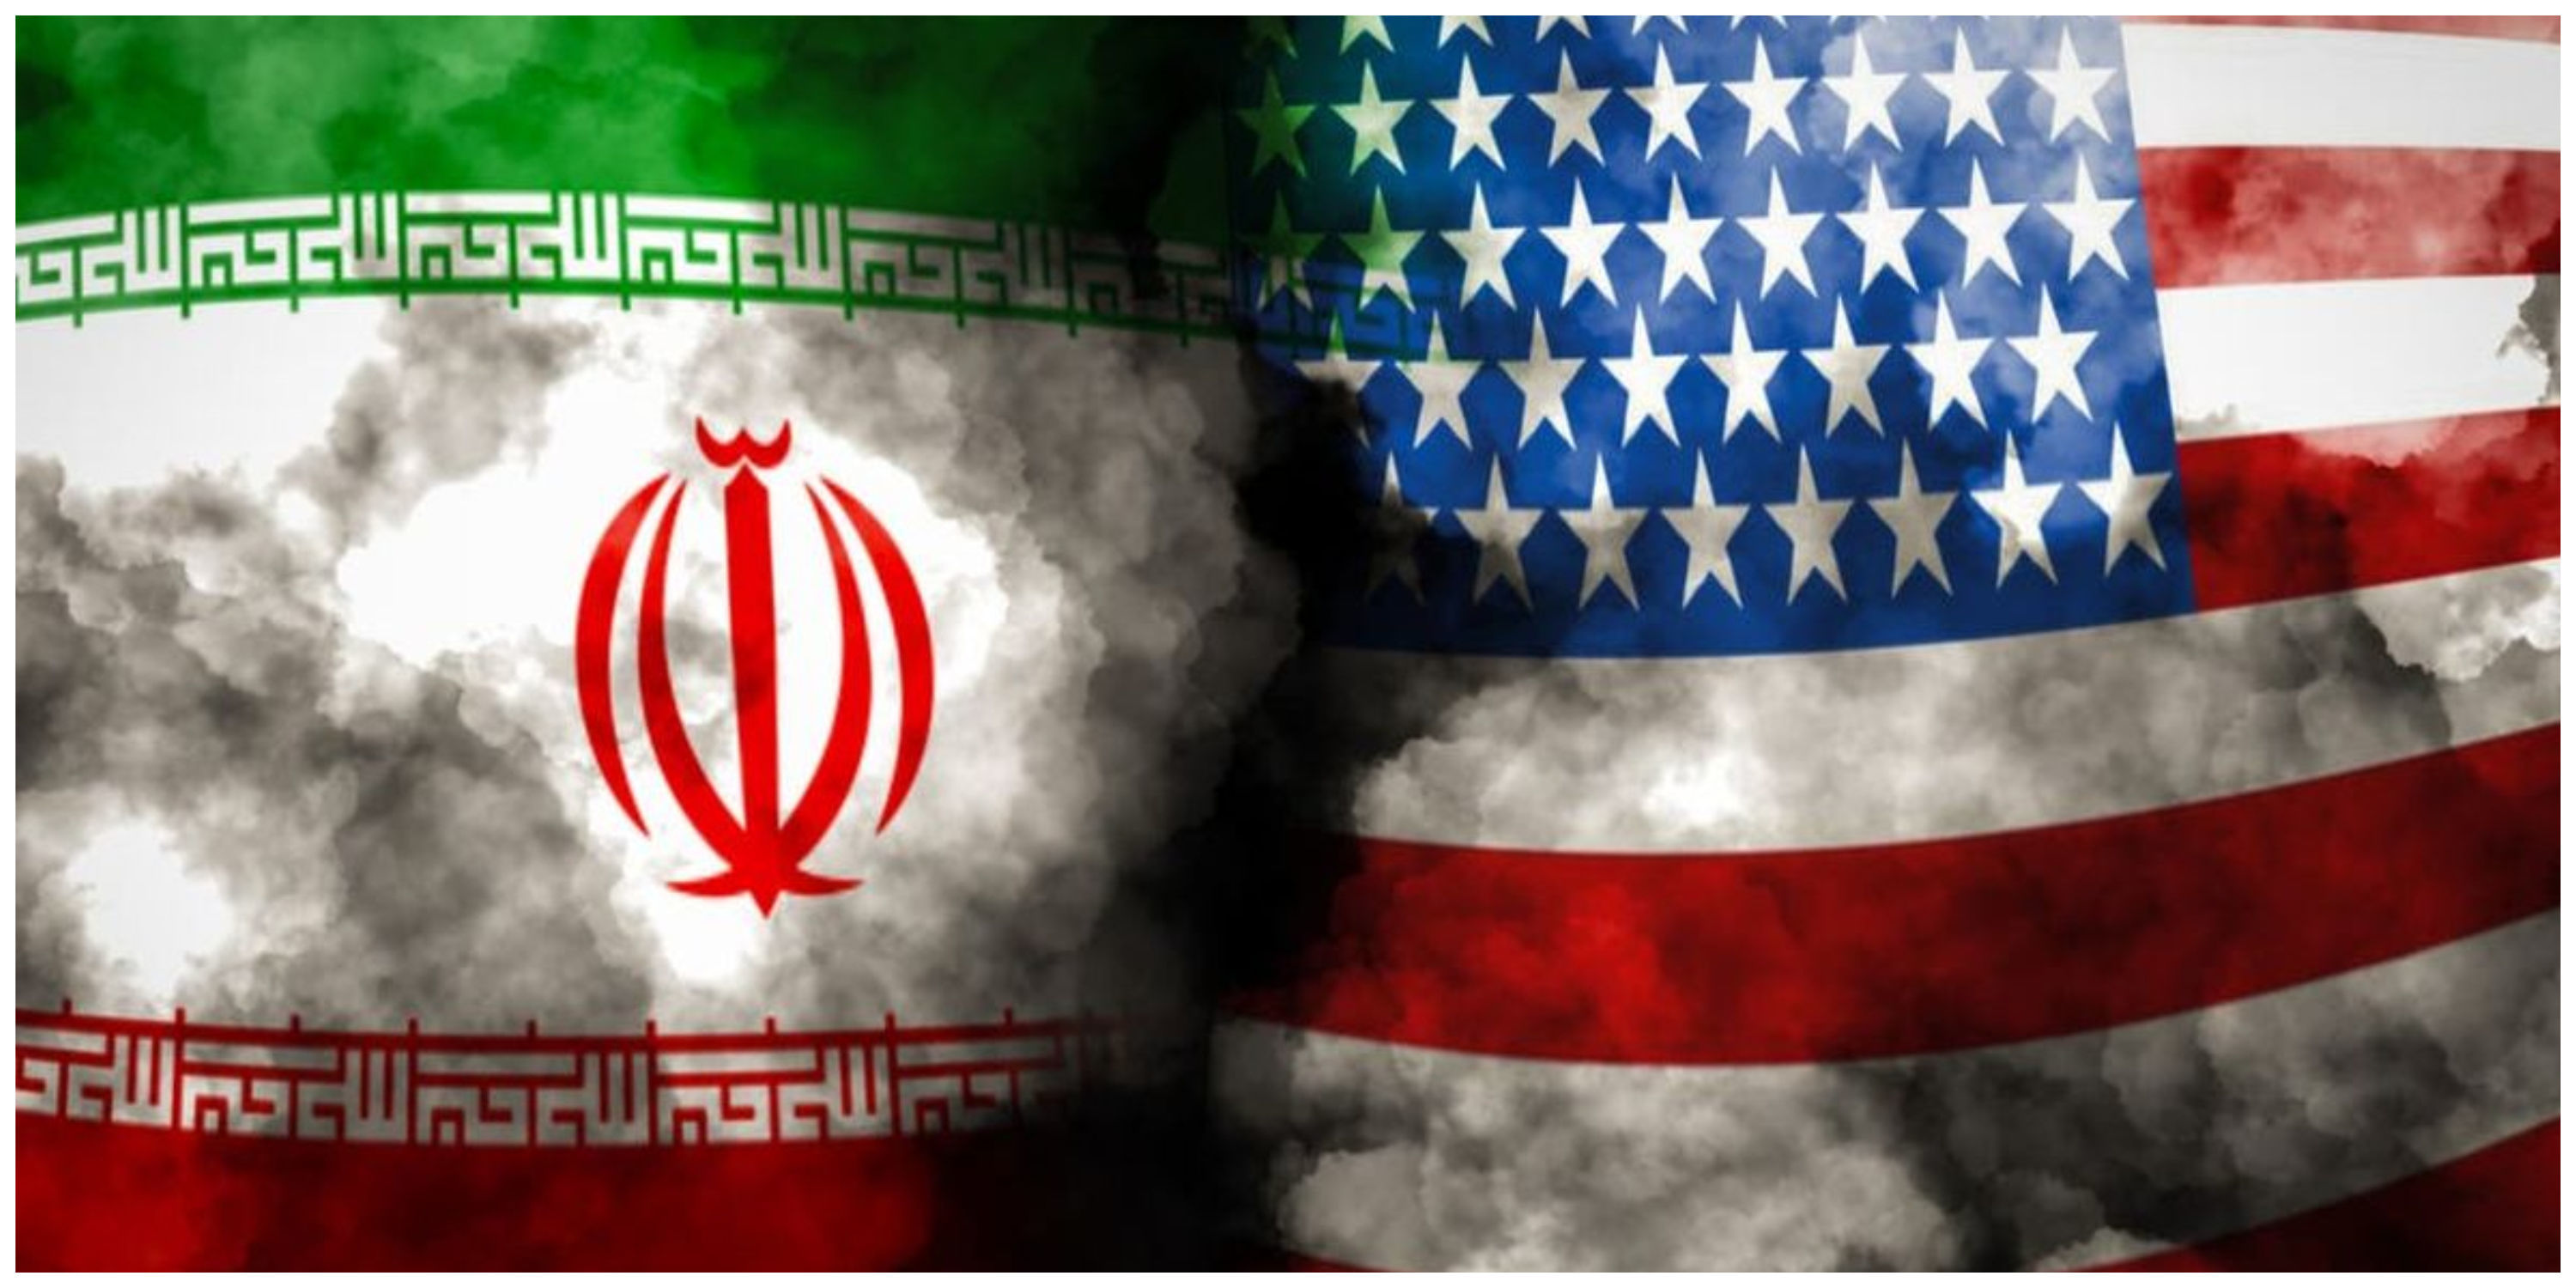 واکنش عجیب آمریکا به ائتلاف مشترک دریایی ایران با کشورهای منطقه​